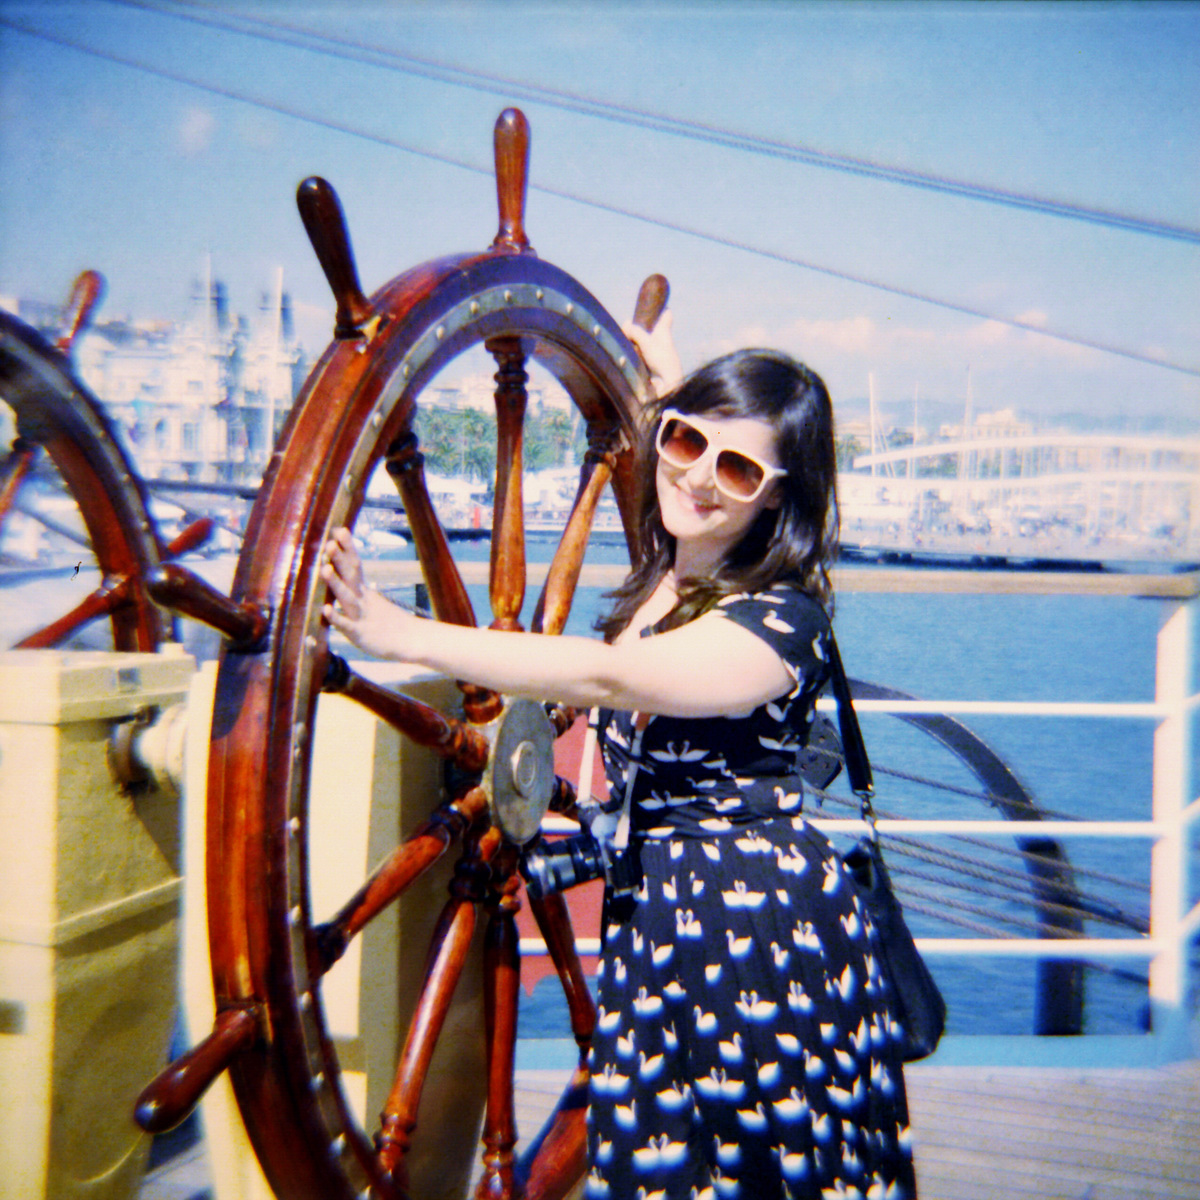 Segelschiff-Regatta im Hafen von Barcelona - Diana F+ Foto auf "Fee ist mein Name"